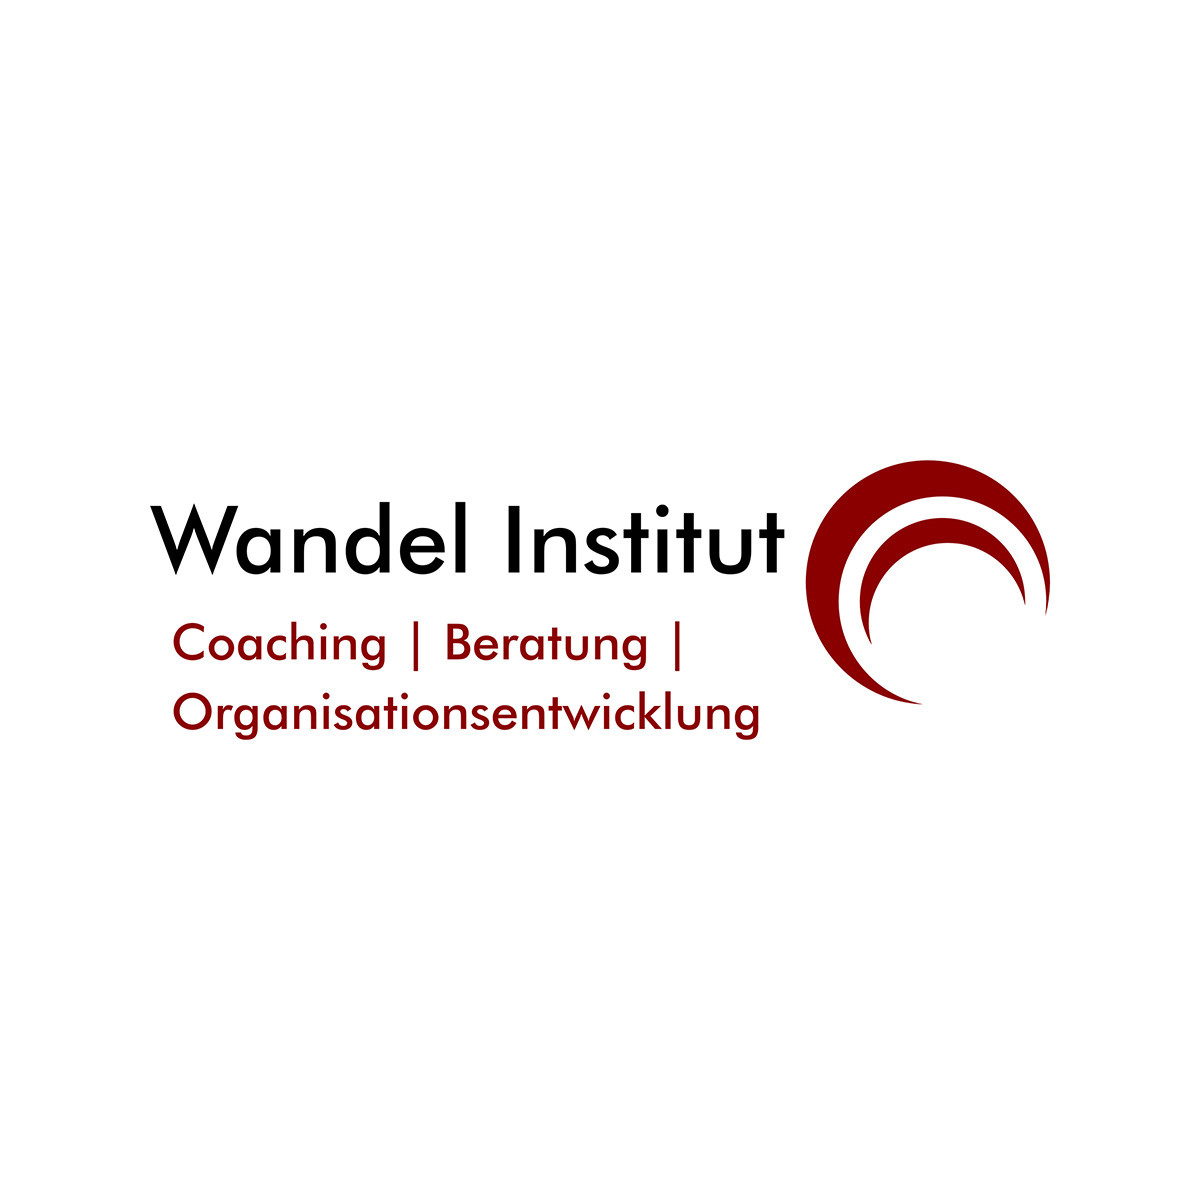 (c) Wandel-institut.de